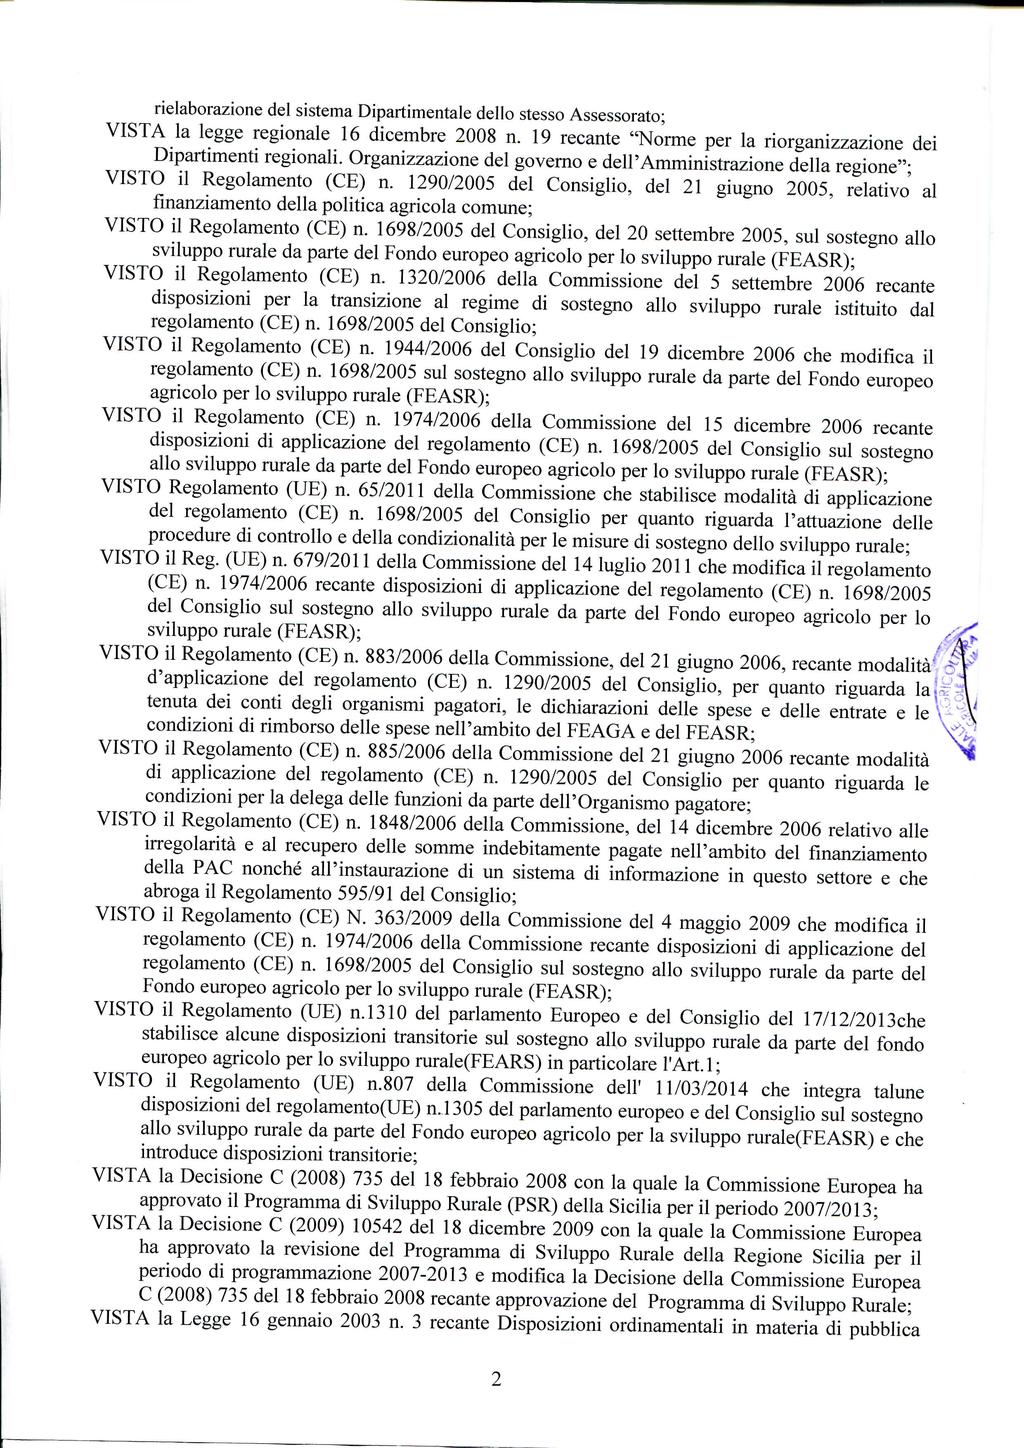 rielaborazione del sistema Dipartimentale dello stesso Assessorato; VISTA la legge regionale 16 dicembre 2008 n. 19 recante "Norme per la riorganizzazione dei Dipartimenti regionali.